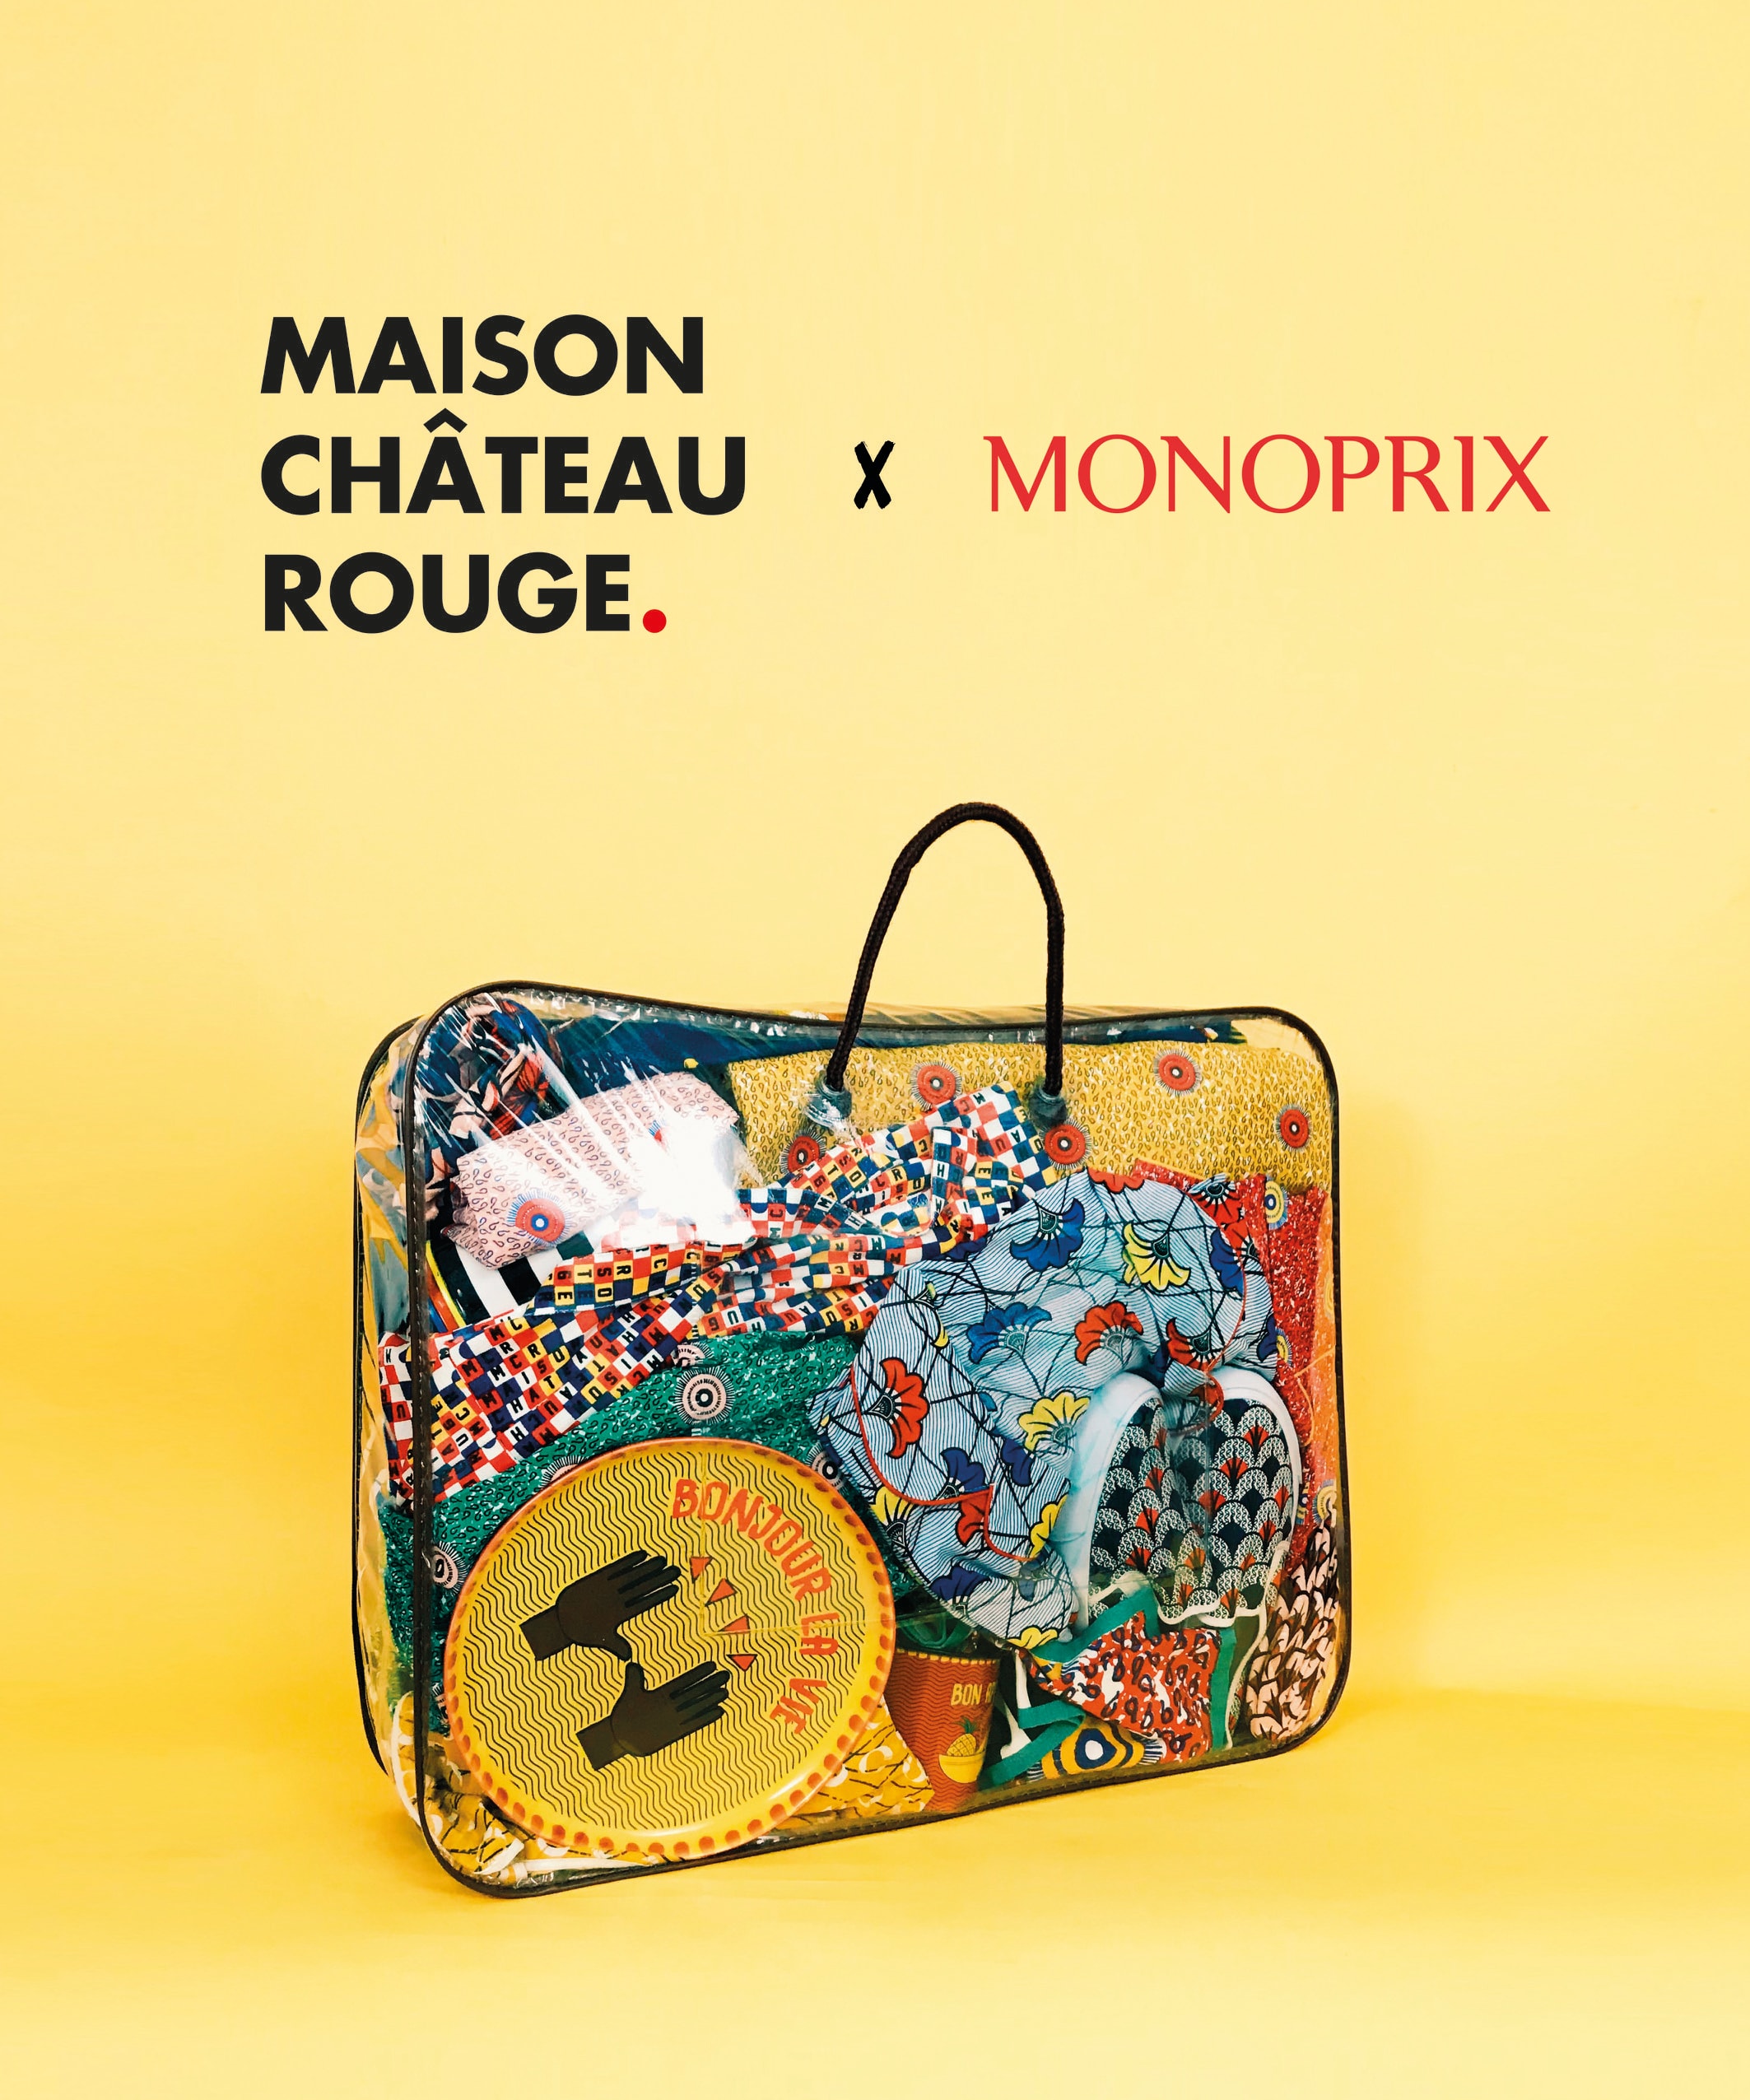 Monoprix - La collaboration Maison Château Rouge X Monoprix s'invite  également dans les rayons alimentaires. Découvrez une large gamme de  produits de grande qualité, comme l'hibiscus, la graine de baobab et la